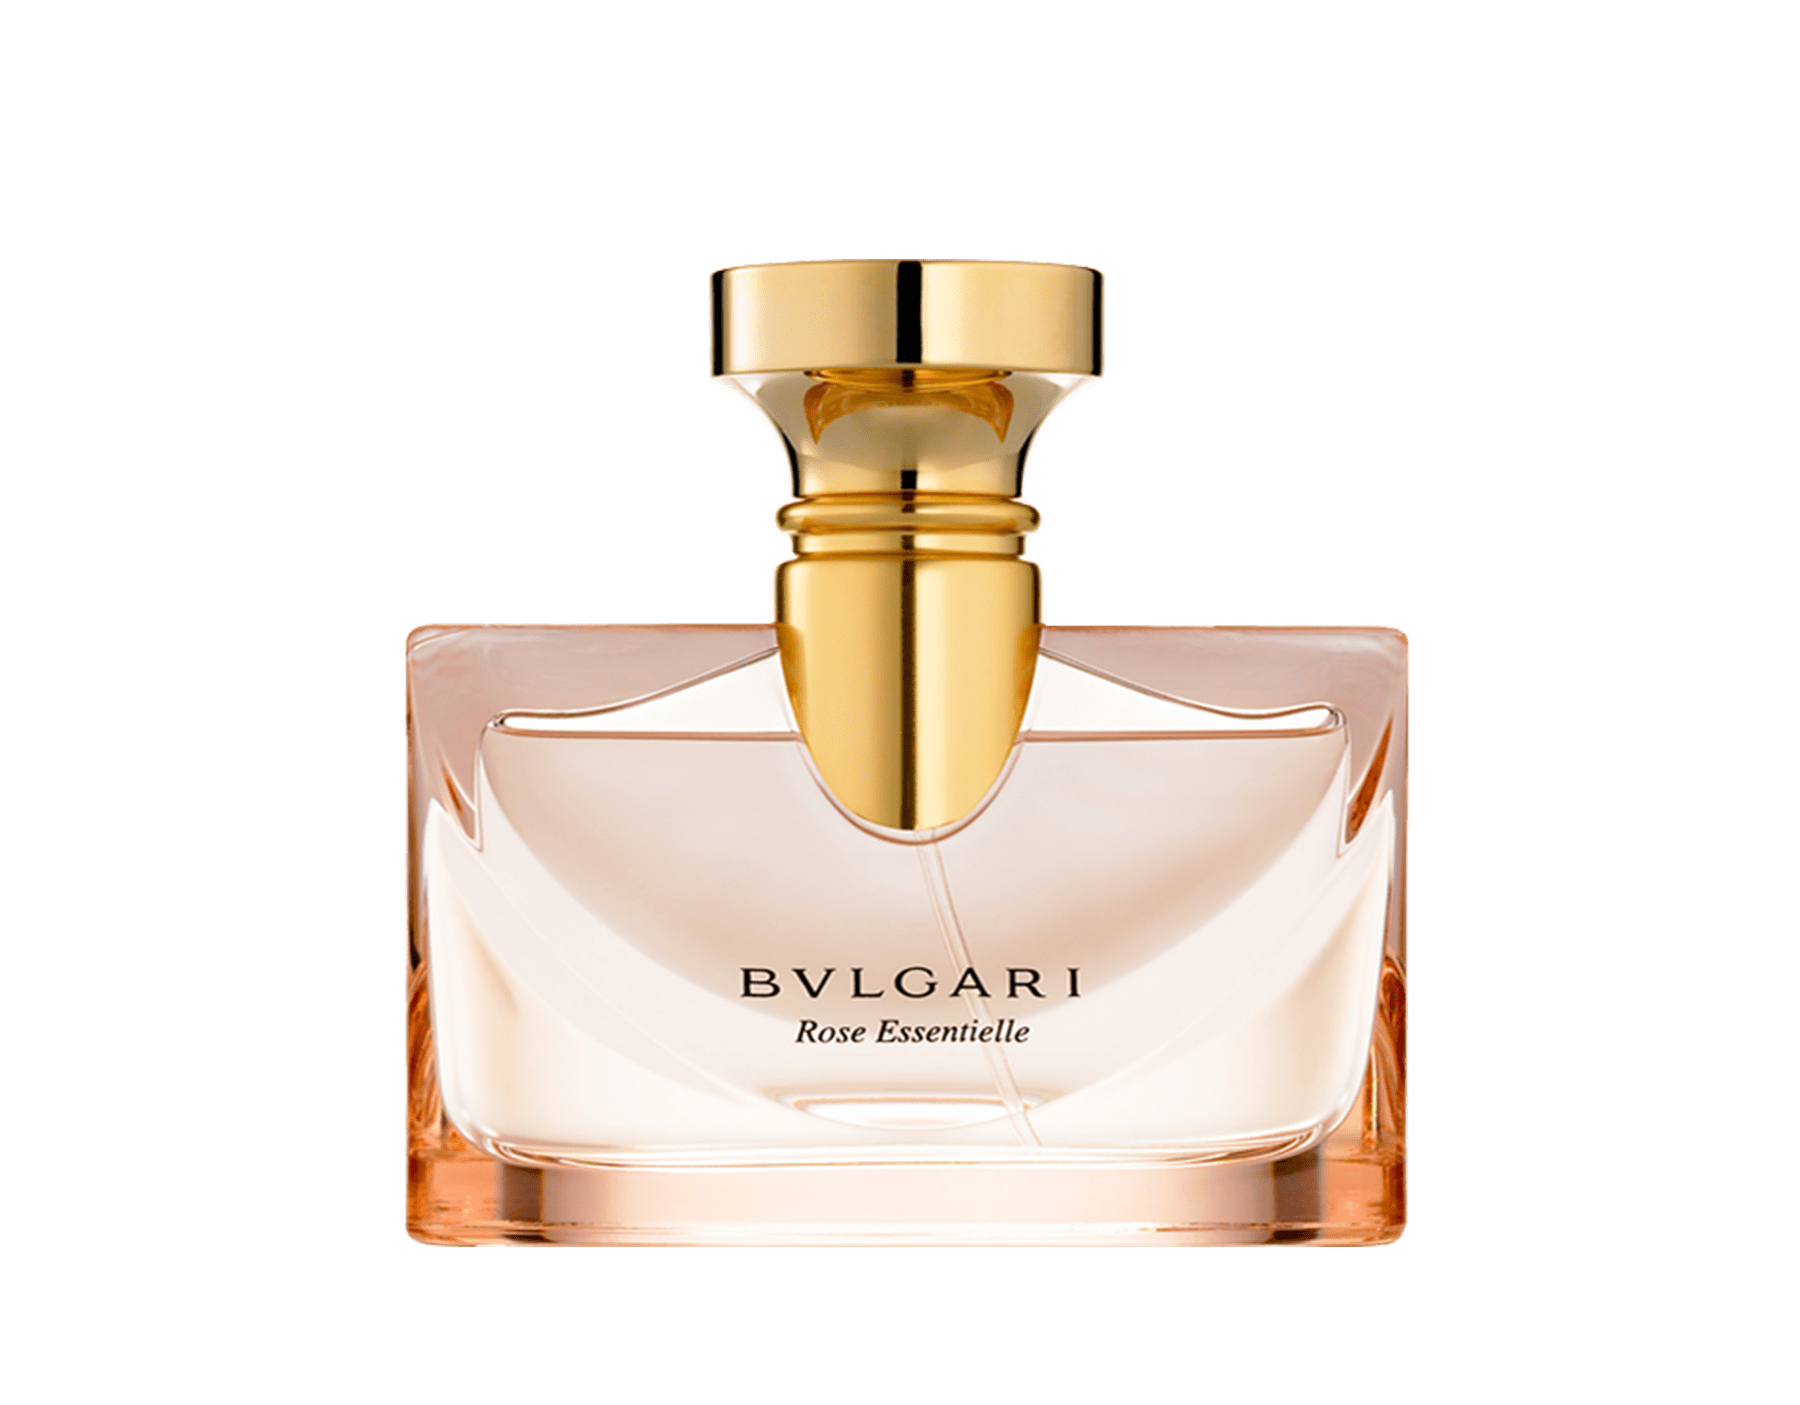 bvlgari perfume 50ml price